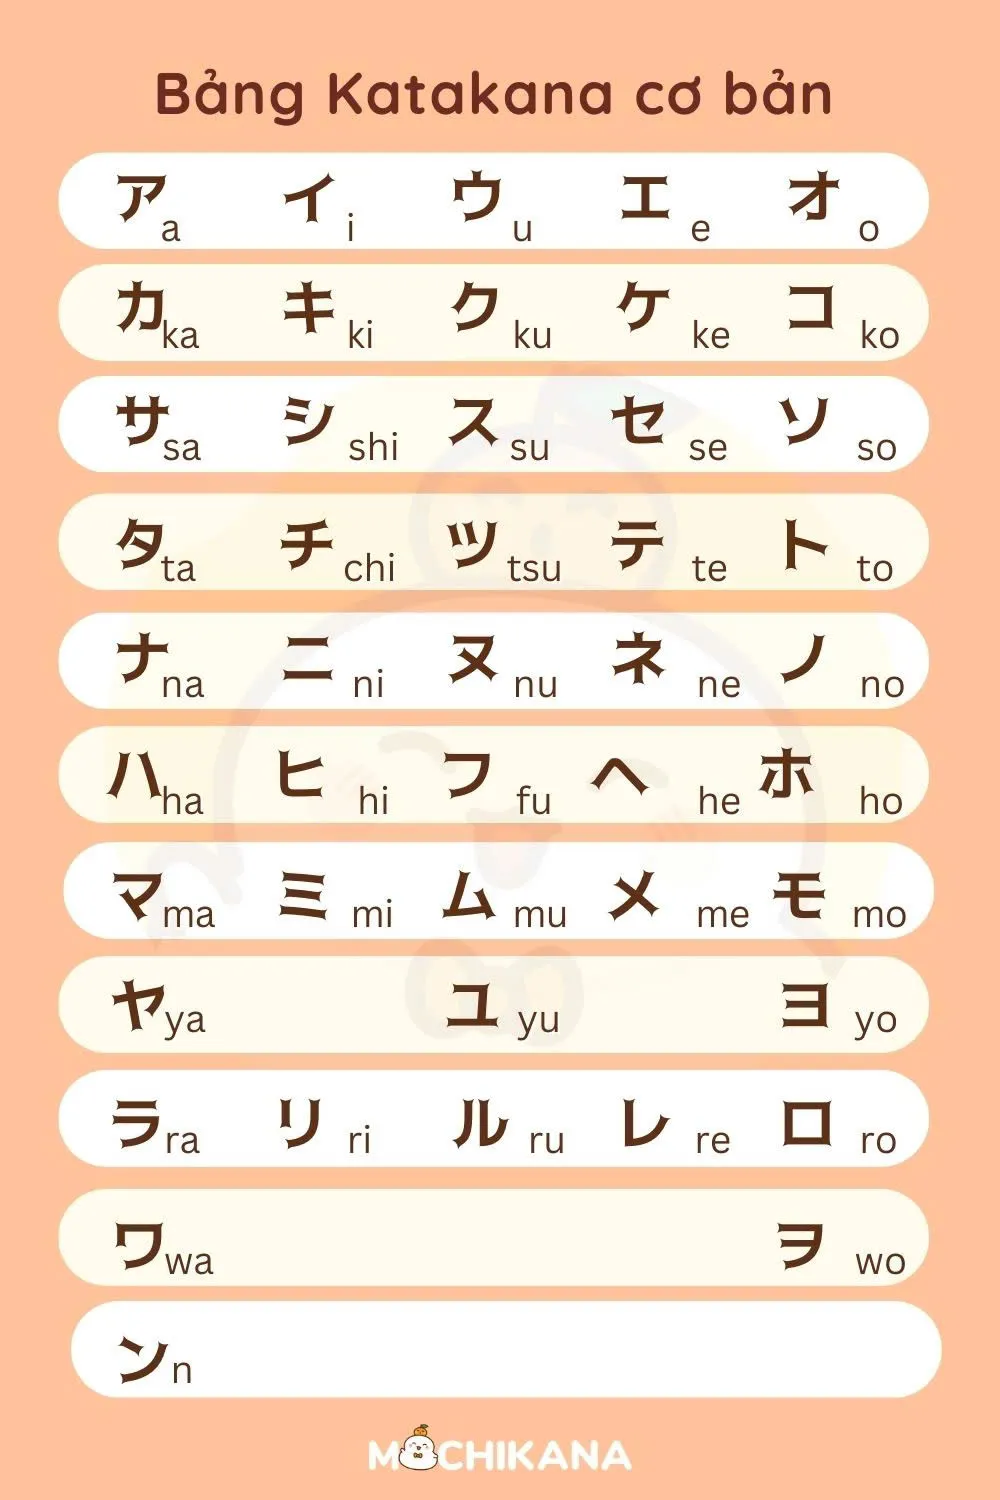 Bảng chữ cái Katakana cơ bản